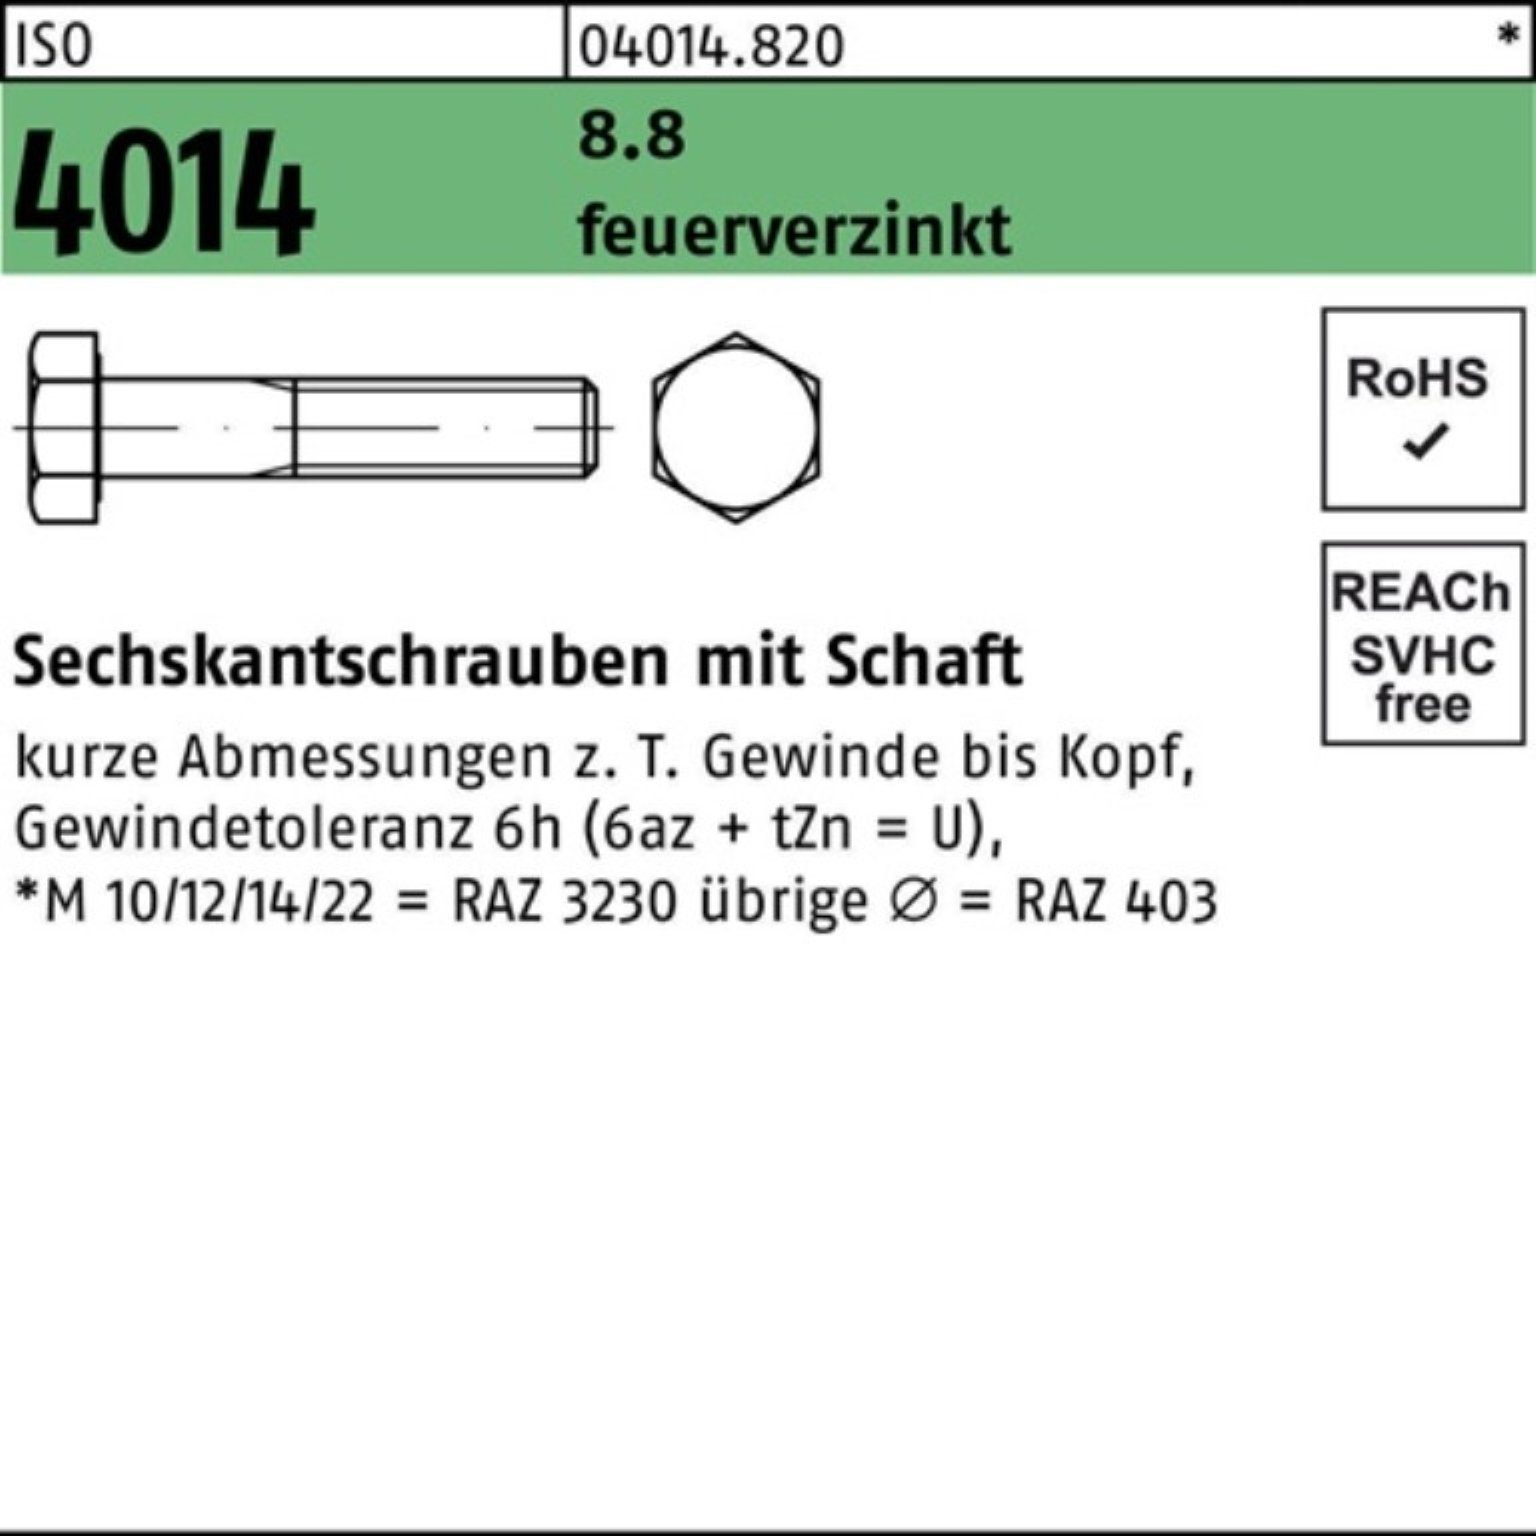 Bufab Sechskantschraube 100er Pack Sechskantschraube ISO 4014 Schaft M20x 130 8.8 feuerverz. 2